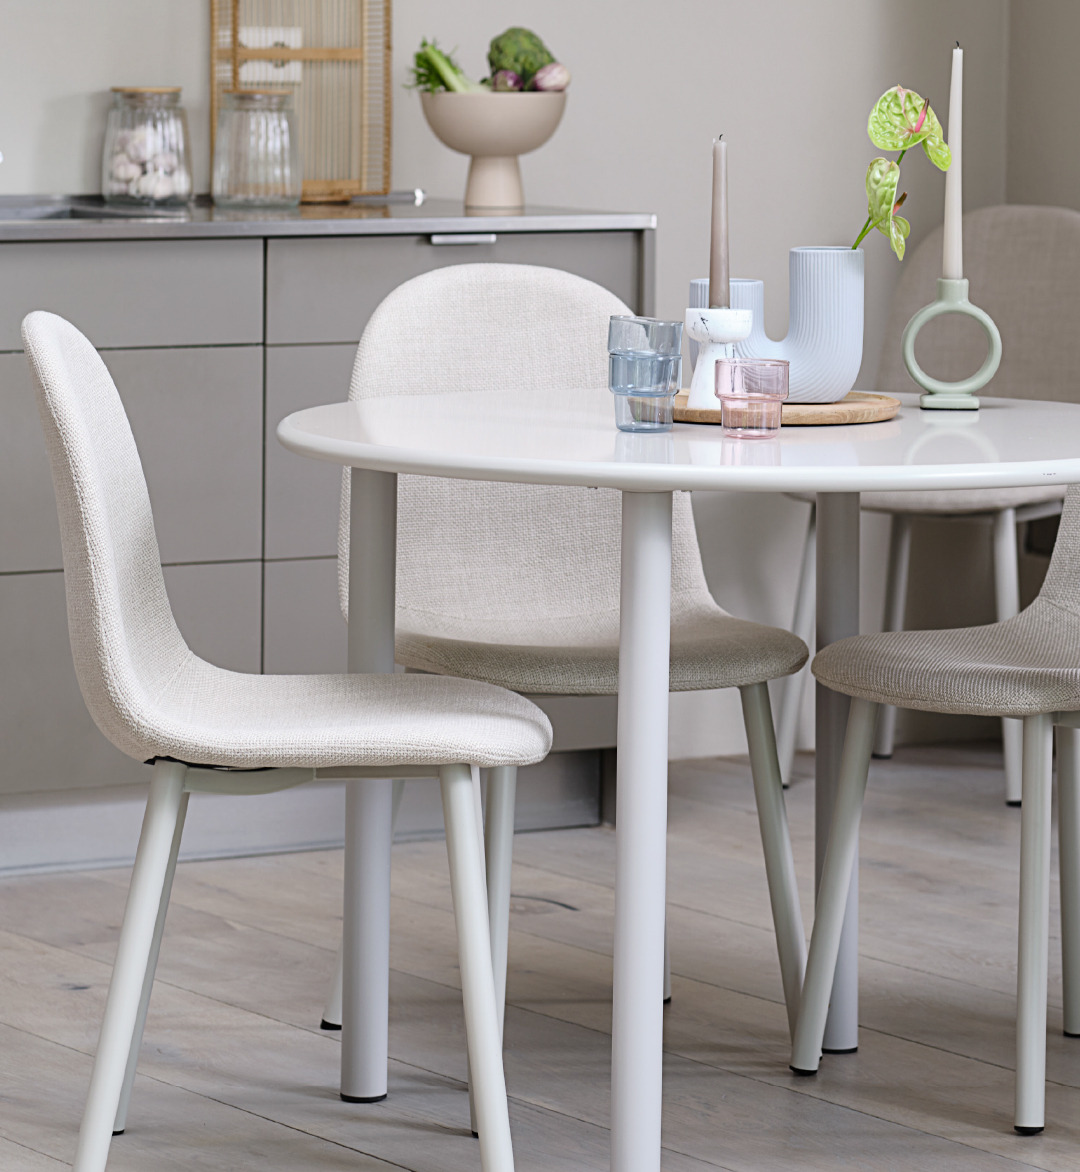 Esszimmer mit weißen Möbeln im minimalistischen Stil